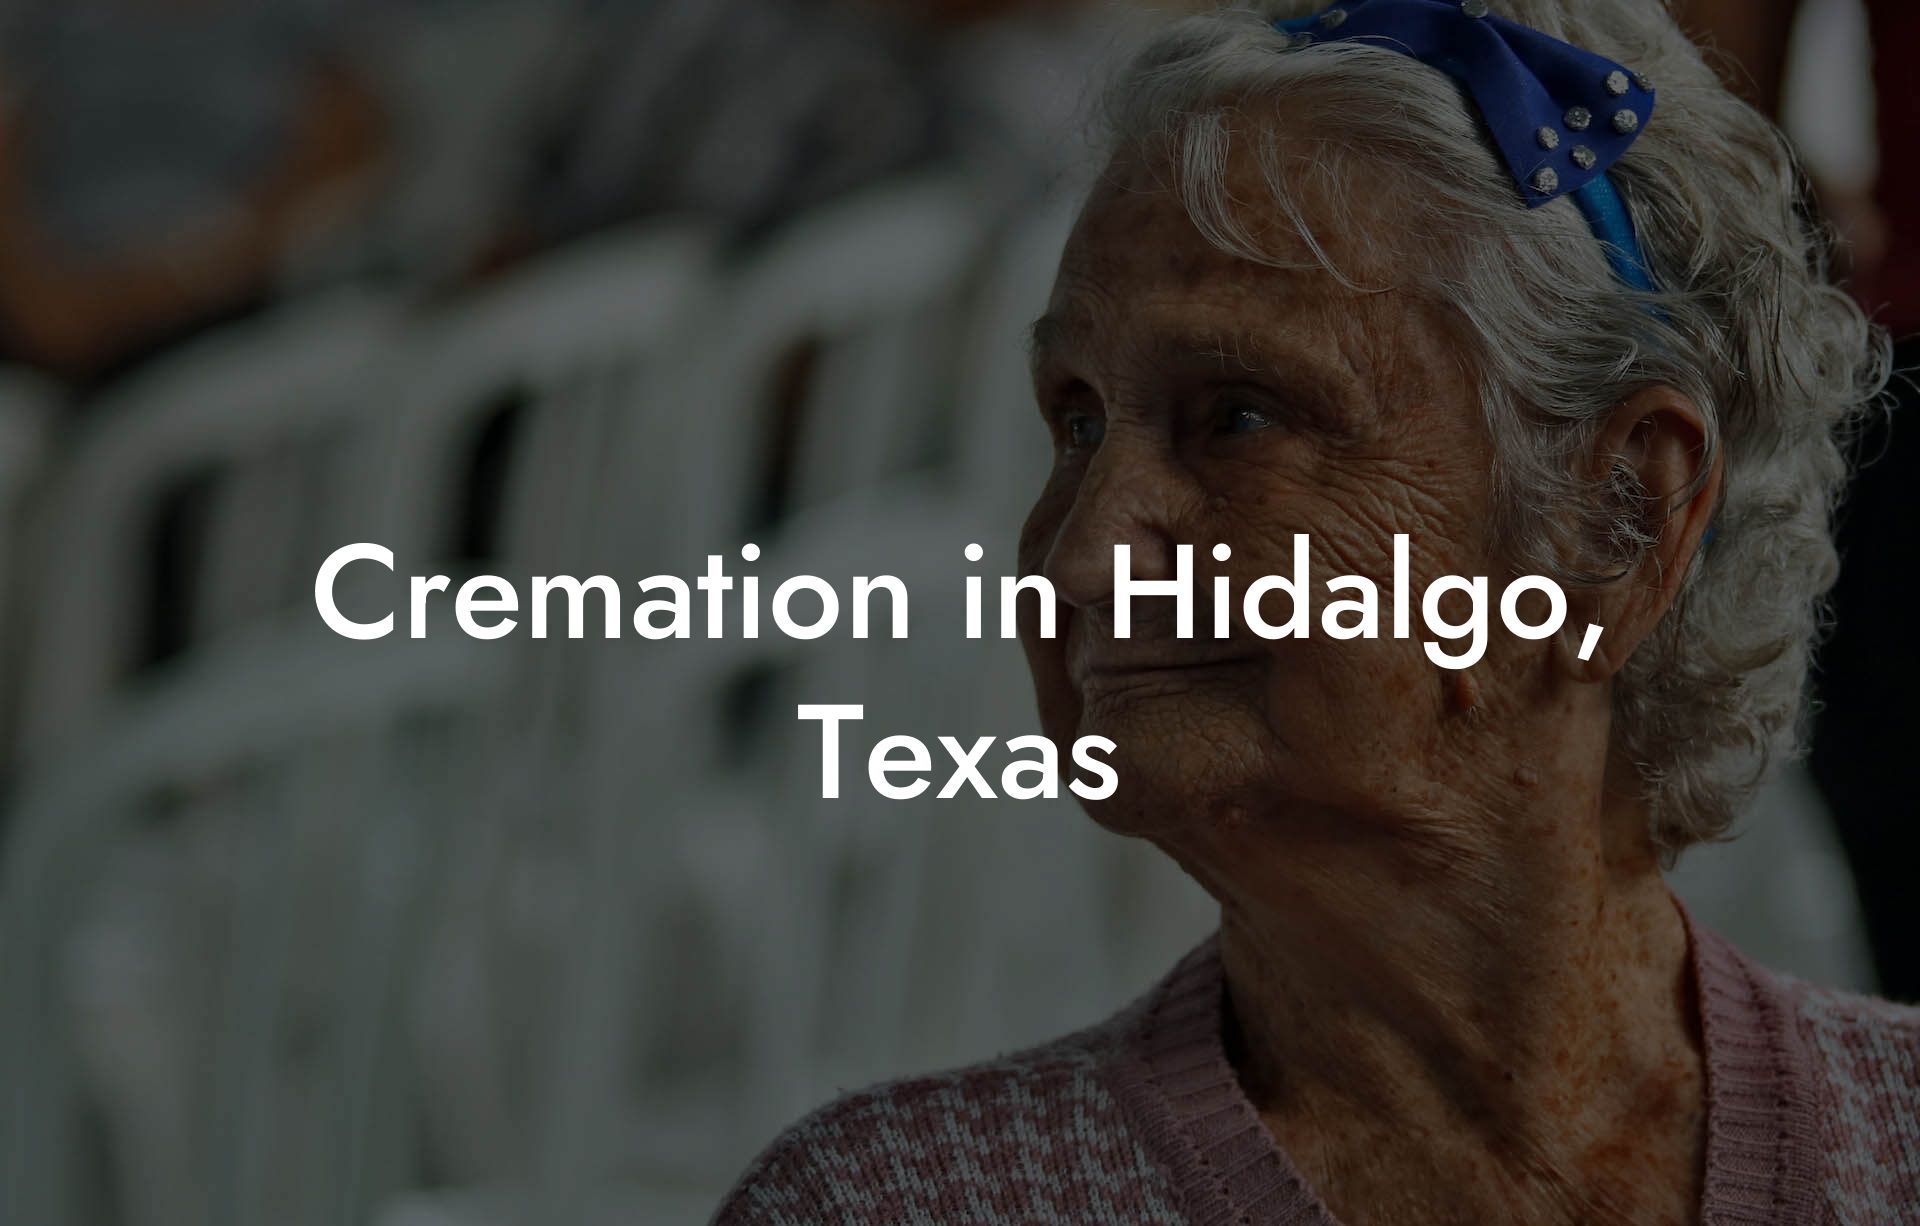 Cremation in Hidalgo, Texas